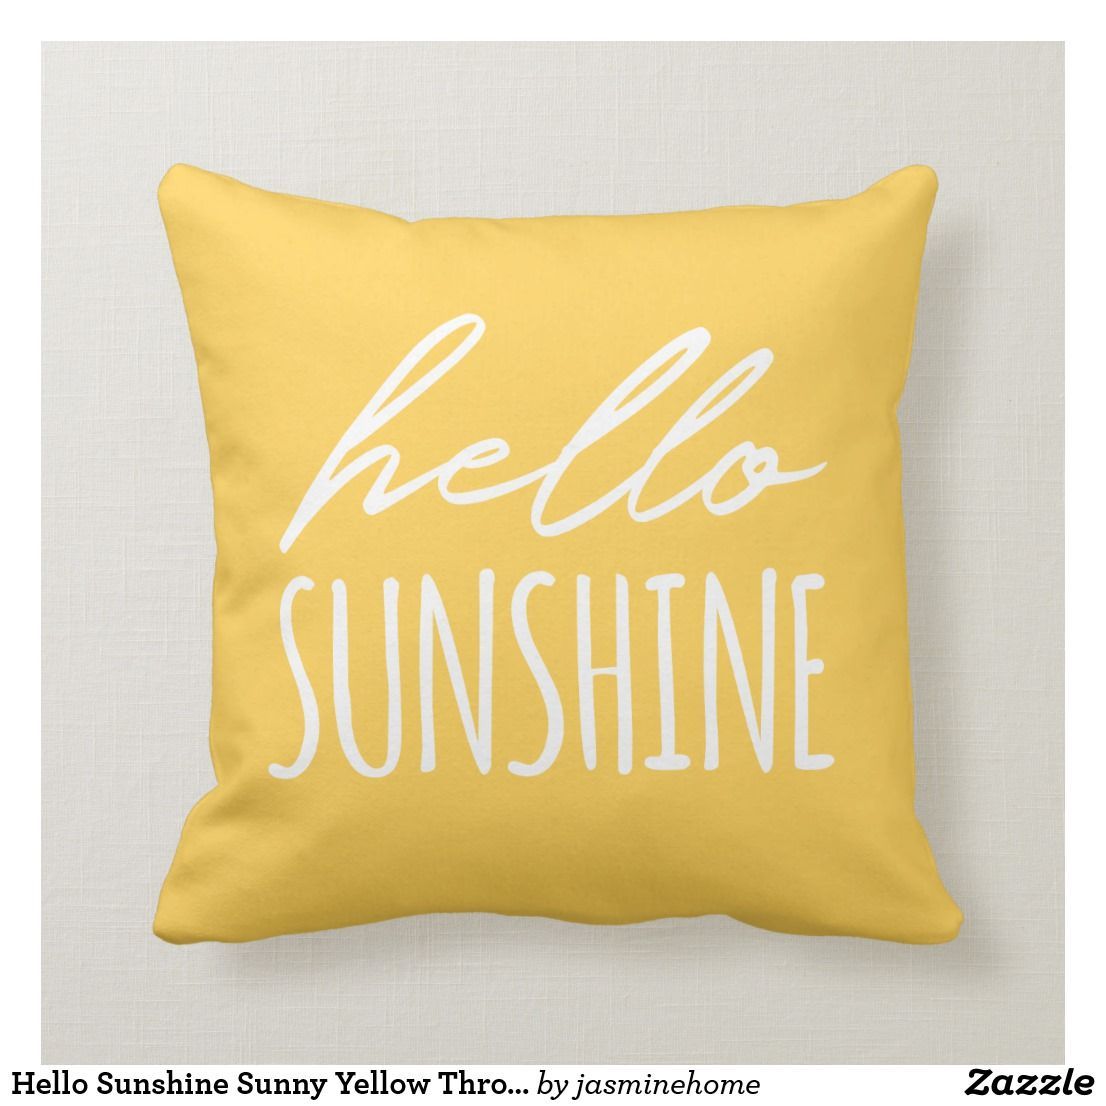 Hello Sunshine Sunny Yellow Throw Pillow | Zazzle.com -   16 room decor Yellow etsy ideas